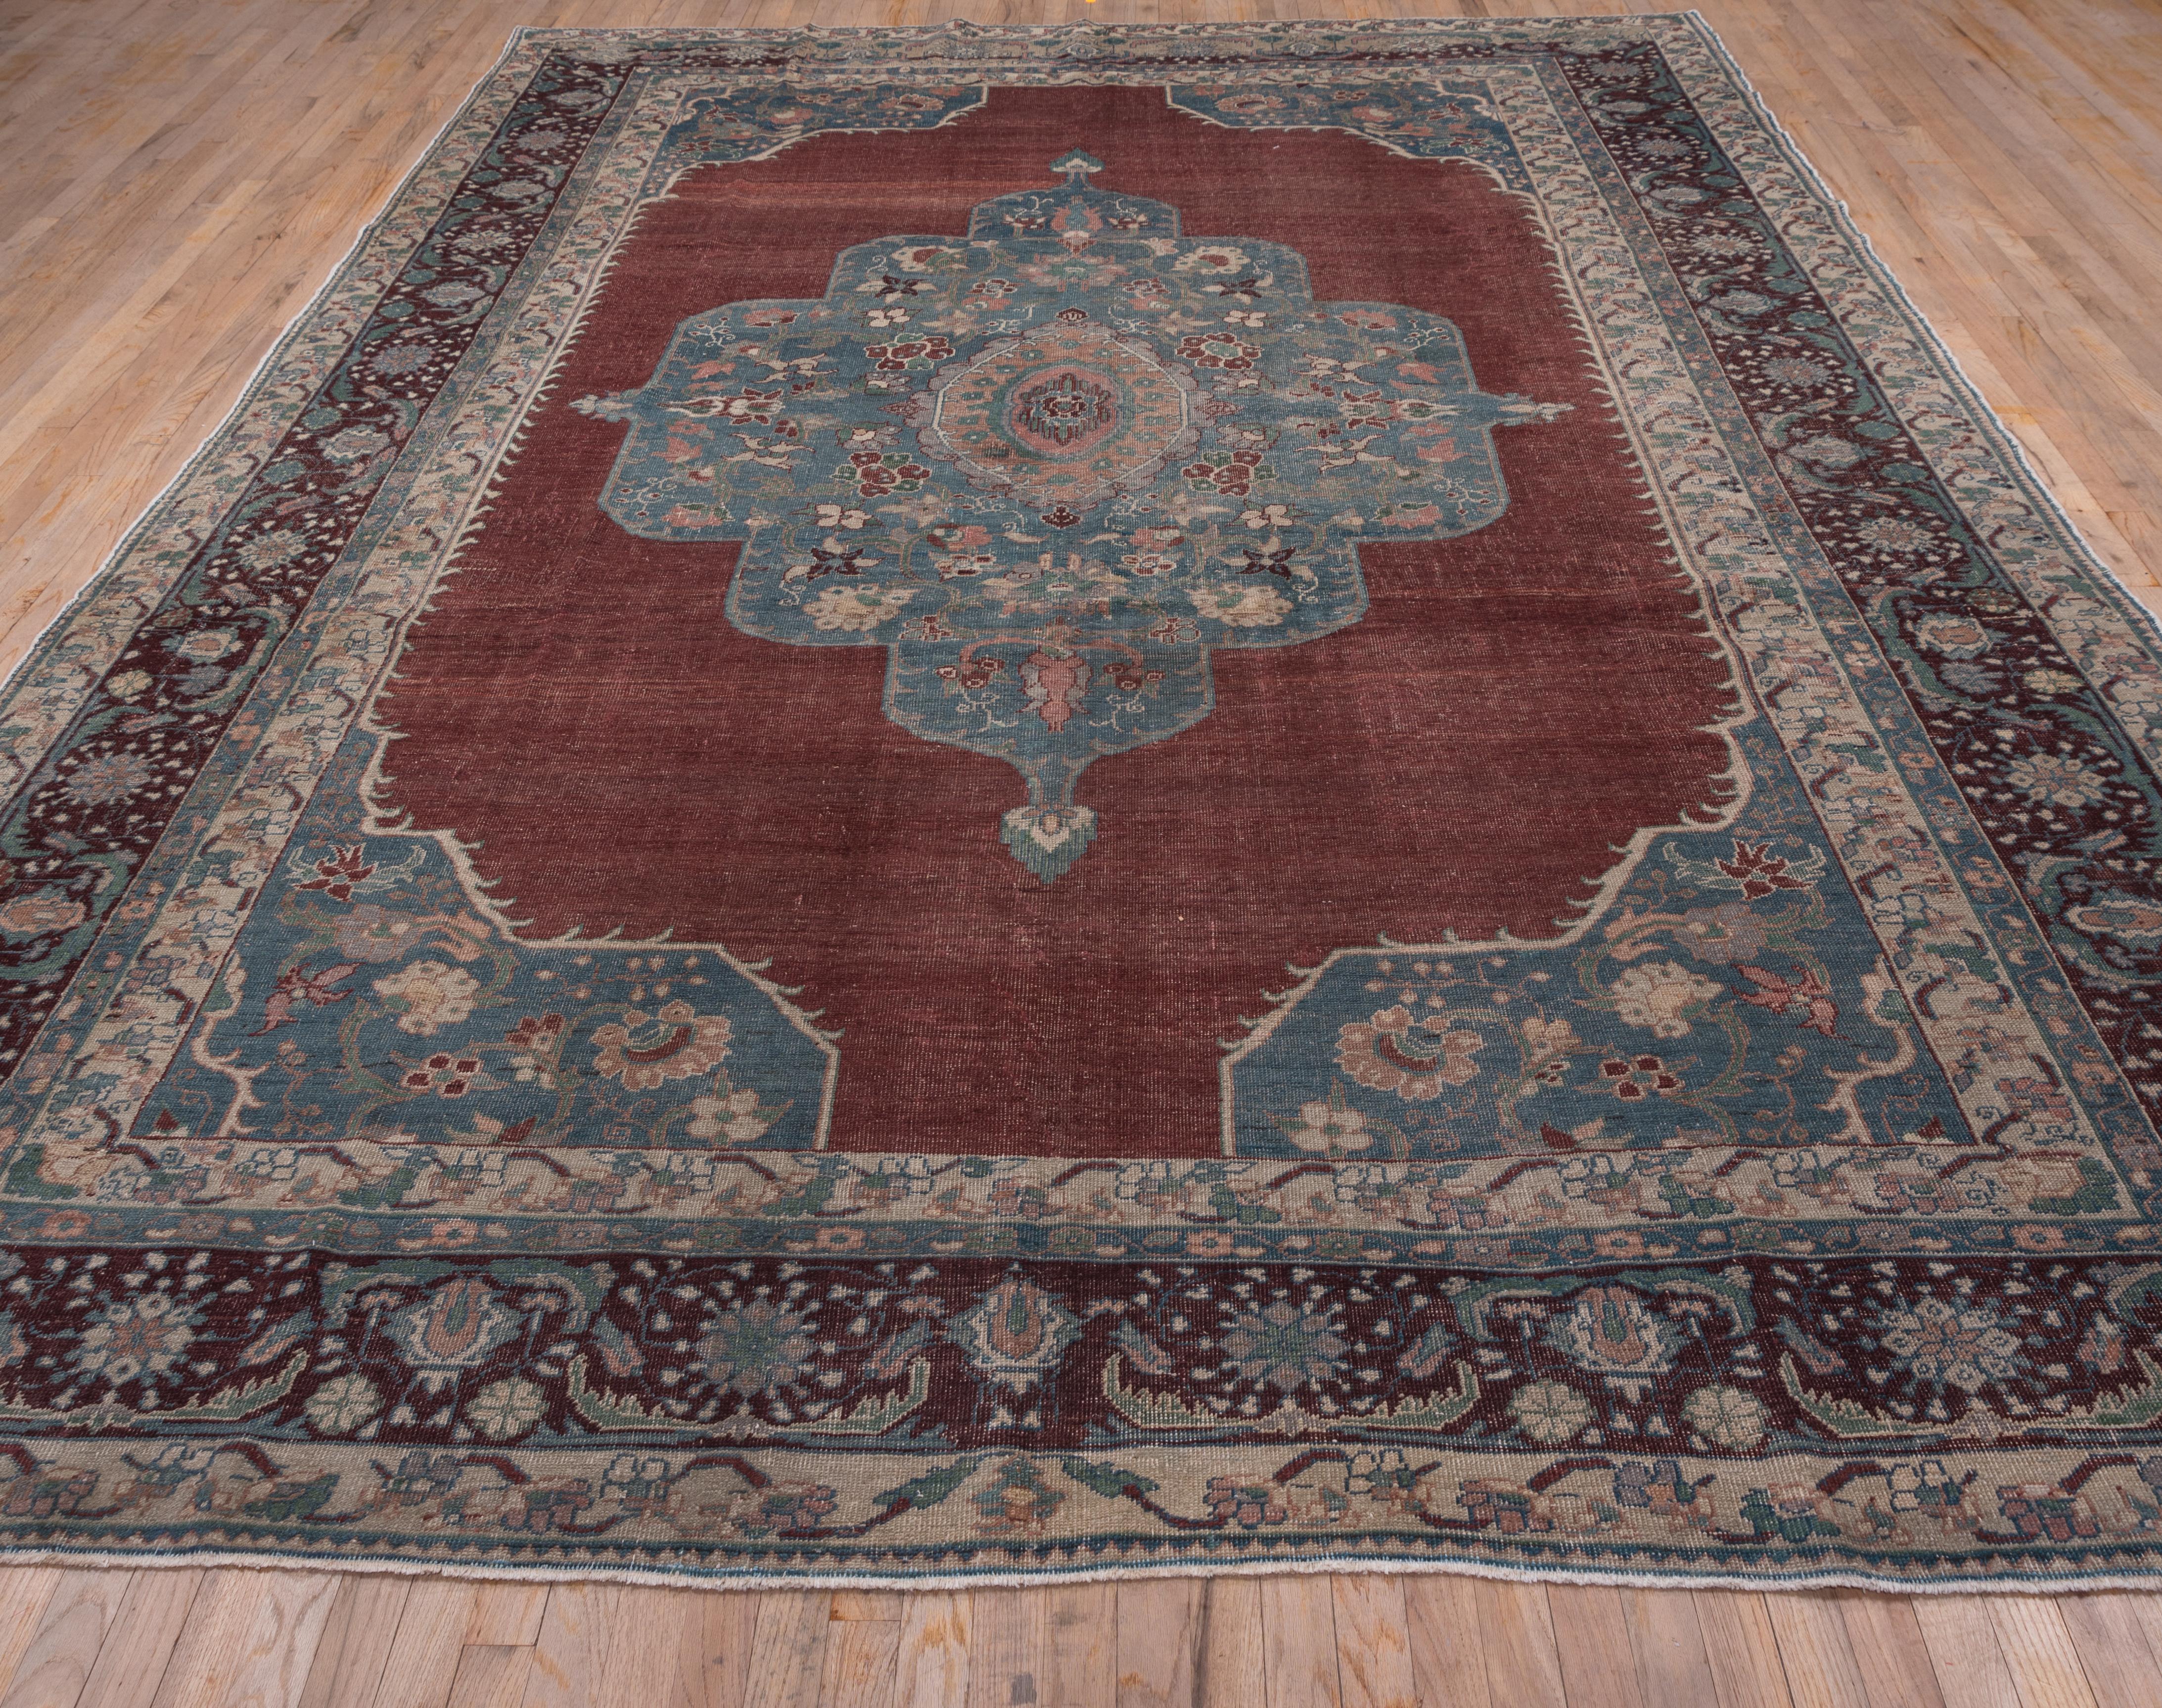 20th Century Turkish Oushak Carpet, circa 1910s